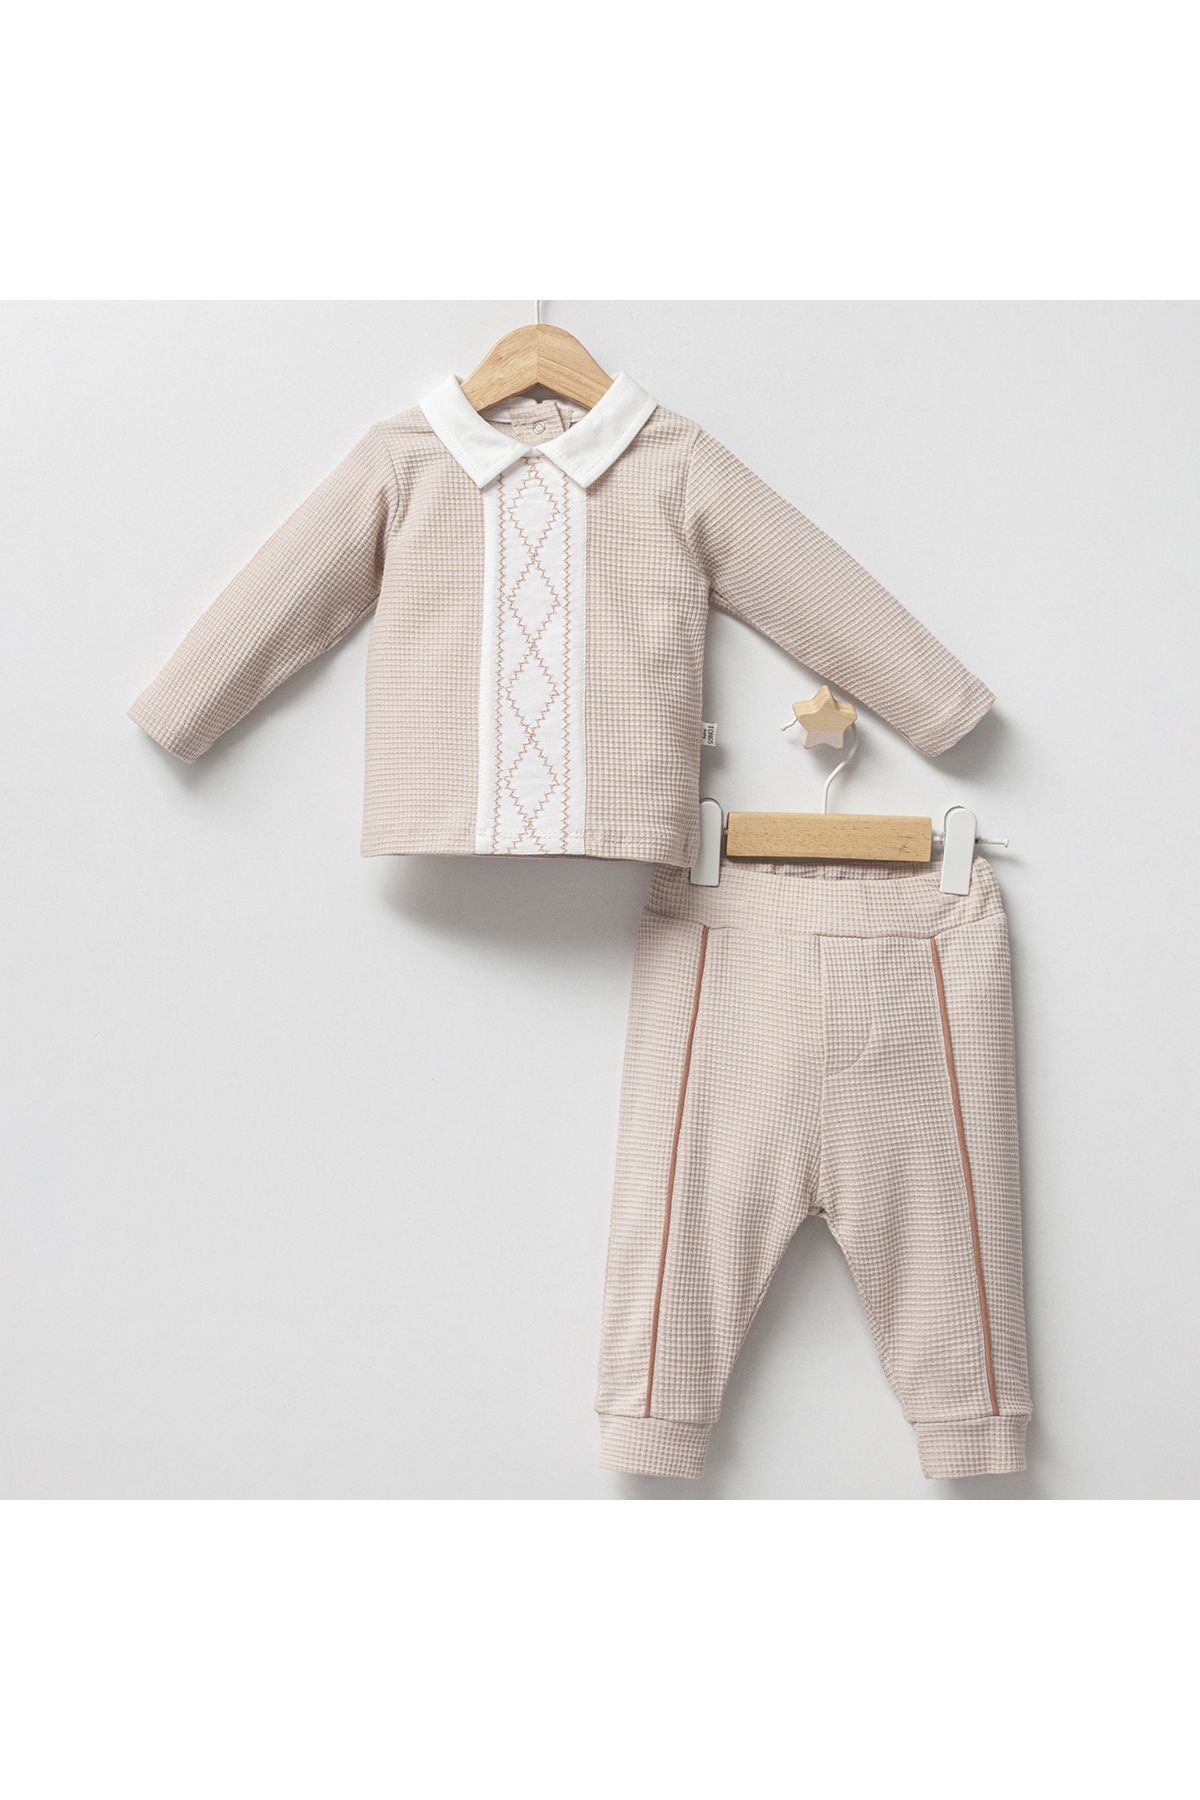 DIDuStore Klasik Şıklık Erkek Bebek Takımı - Rahat ve Şık Tasarım